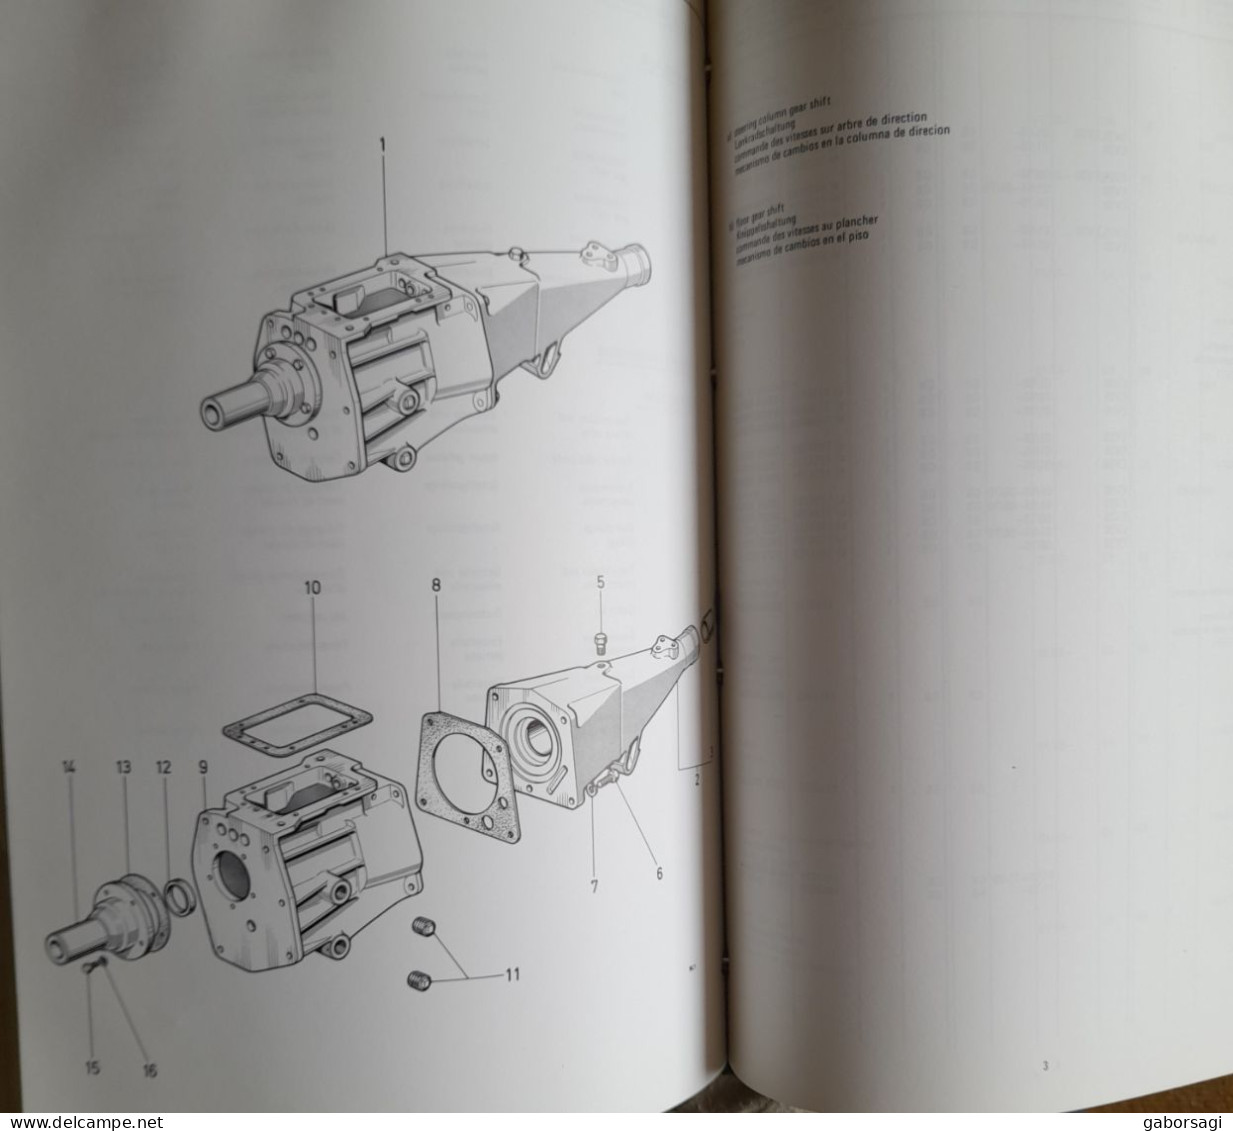 Ford Transmission Parts Catalogue 1973 Edition - Libri Sulle Collezioni